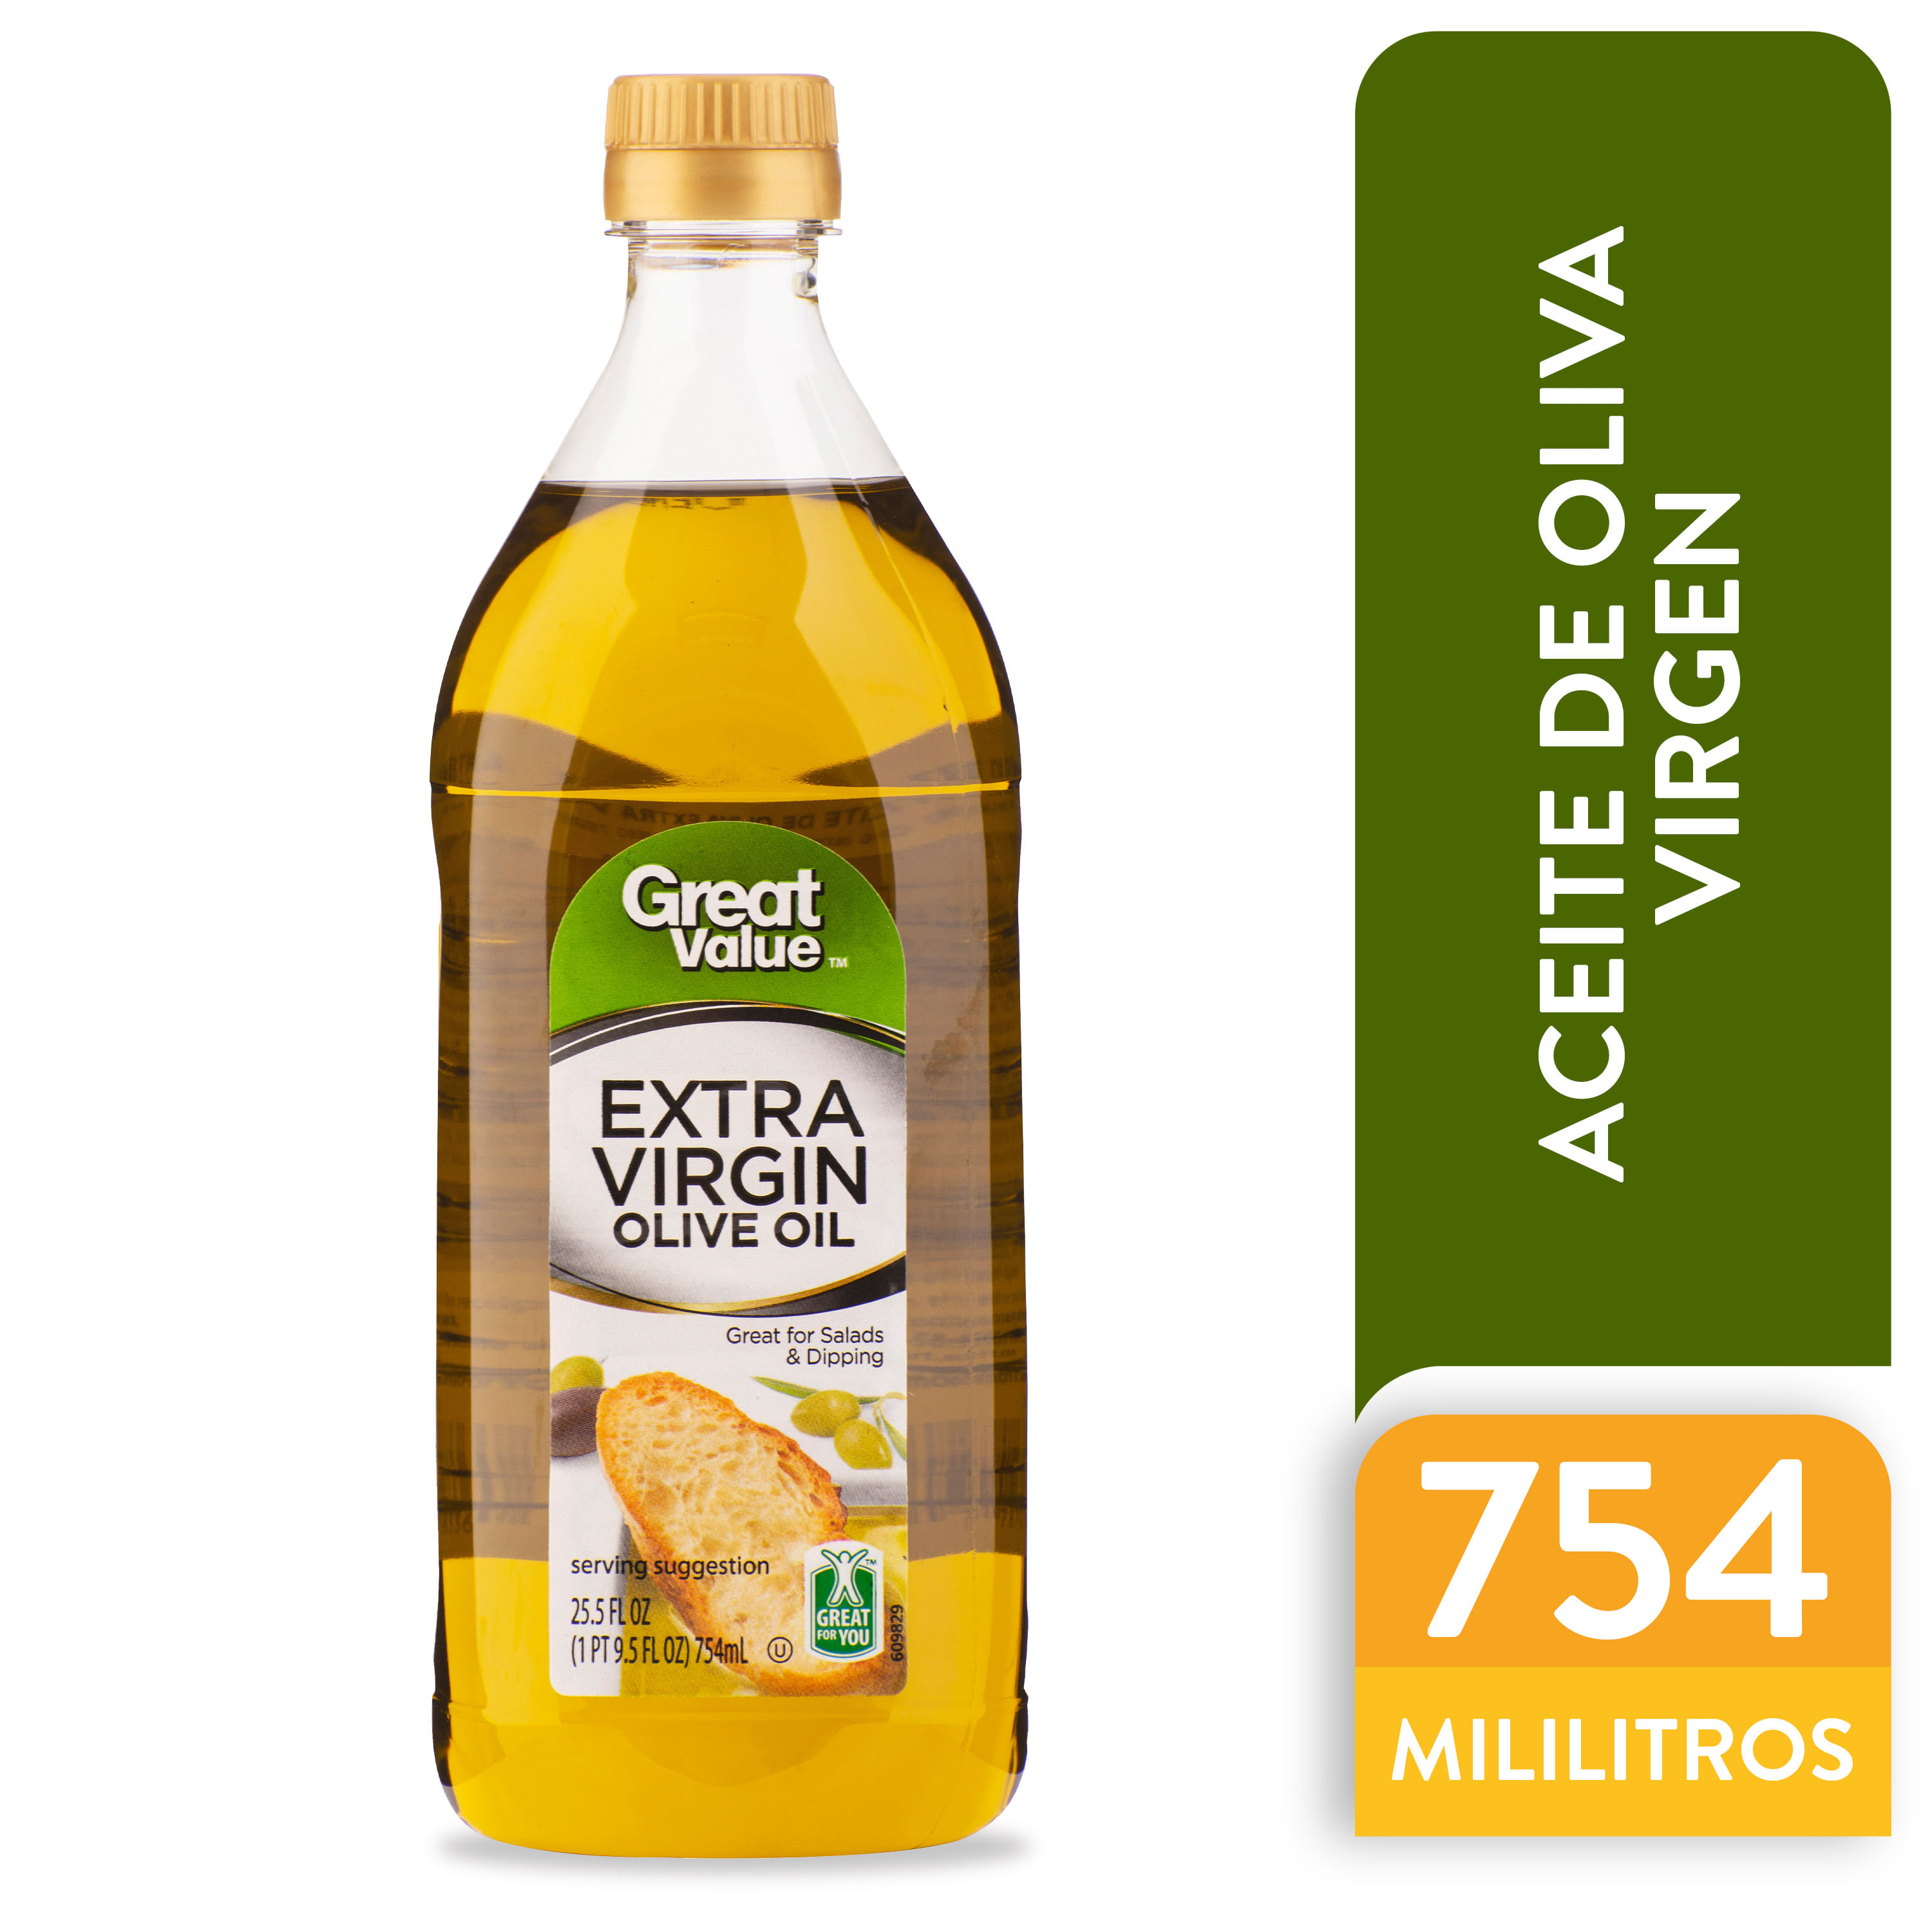  Baja Precious - Aceite de oliva virgen extra, 1 galón : Comida  Gourmet y Alimentos